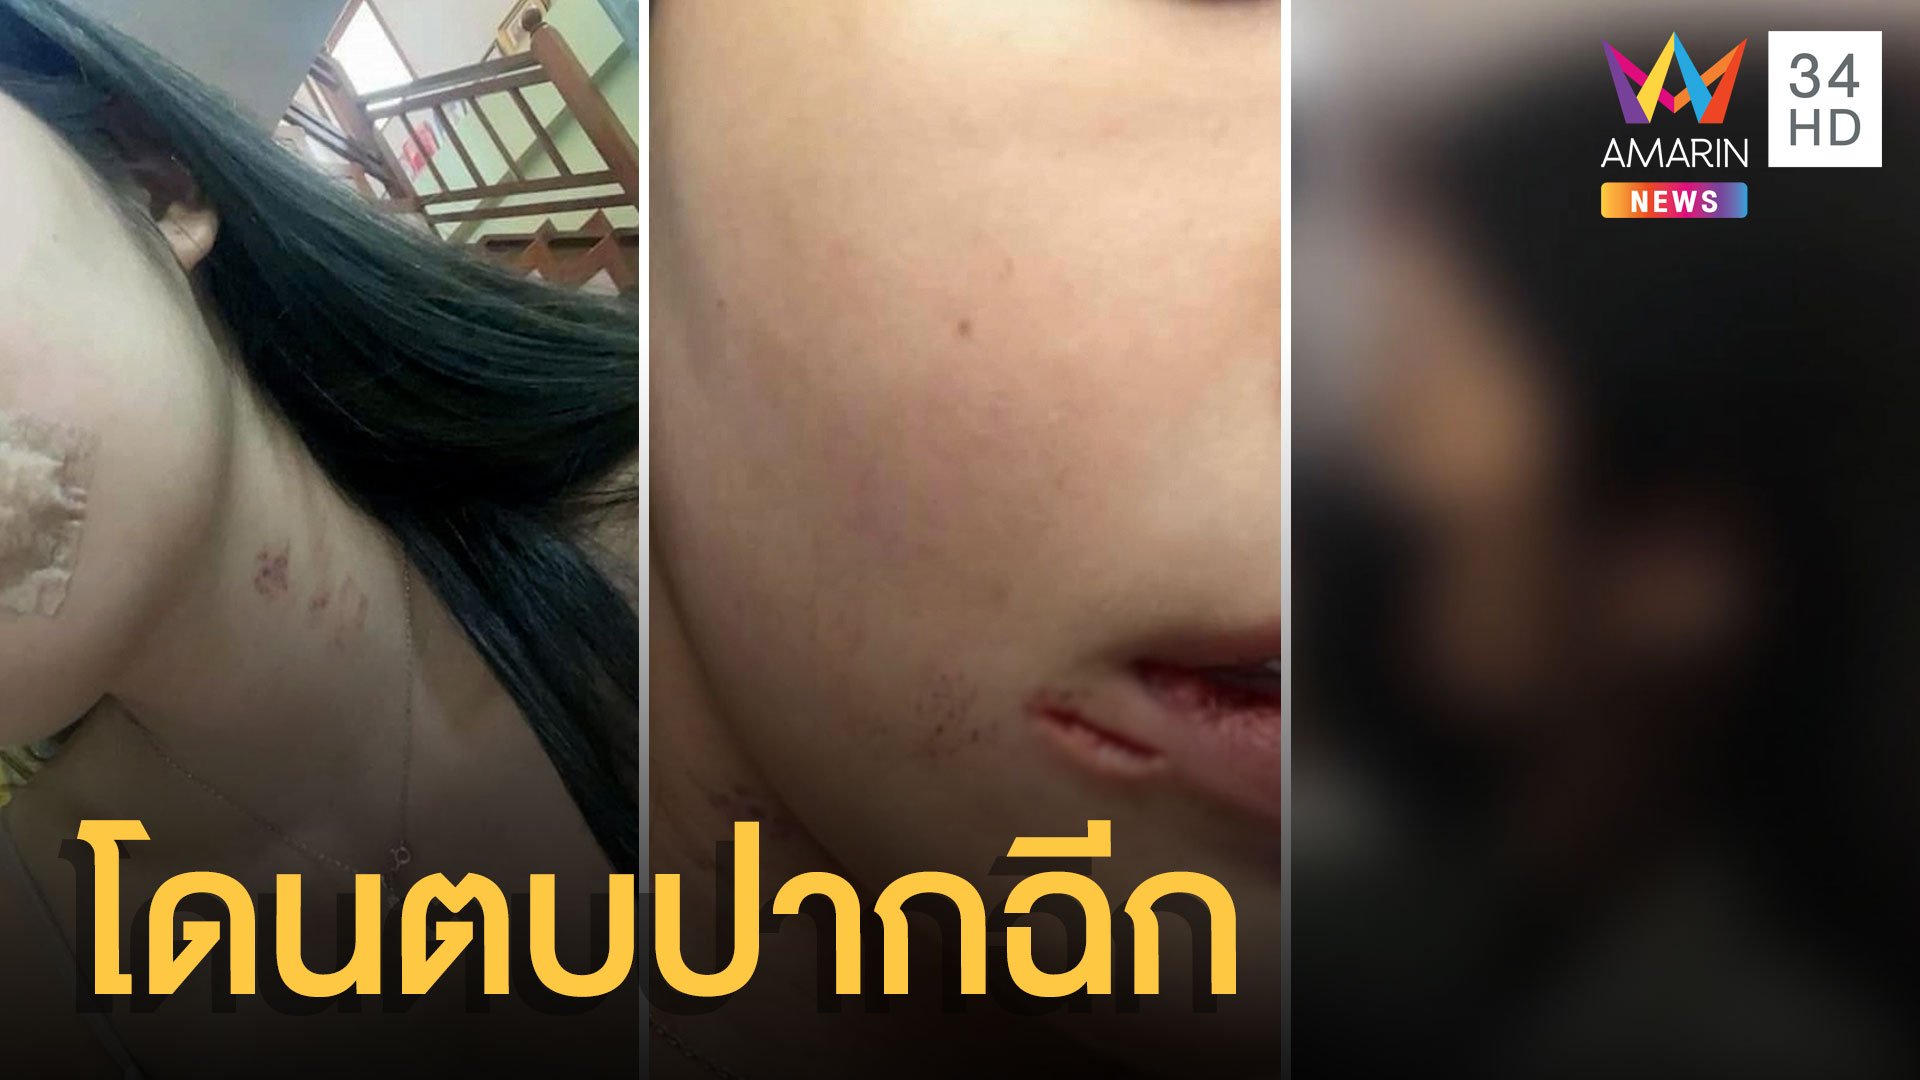 หนุ่มหึงโหด ตบแฟนพริตตี้ปากฉีก ซ้ำขู่ห้ามแจ้งความ | ข่าวเที่ยงอมรินทร์ | 16 มี.ค. 64 | AMARIN TVHD34